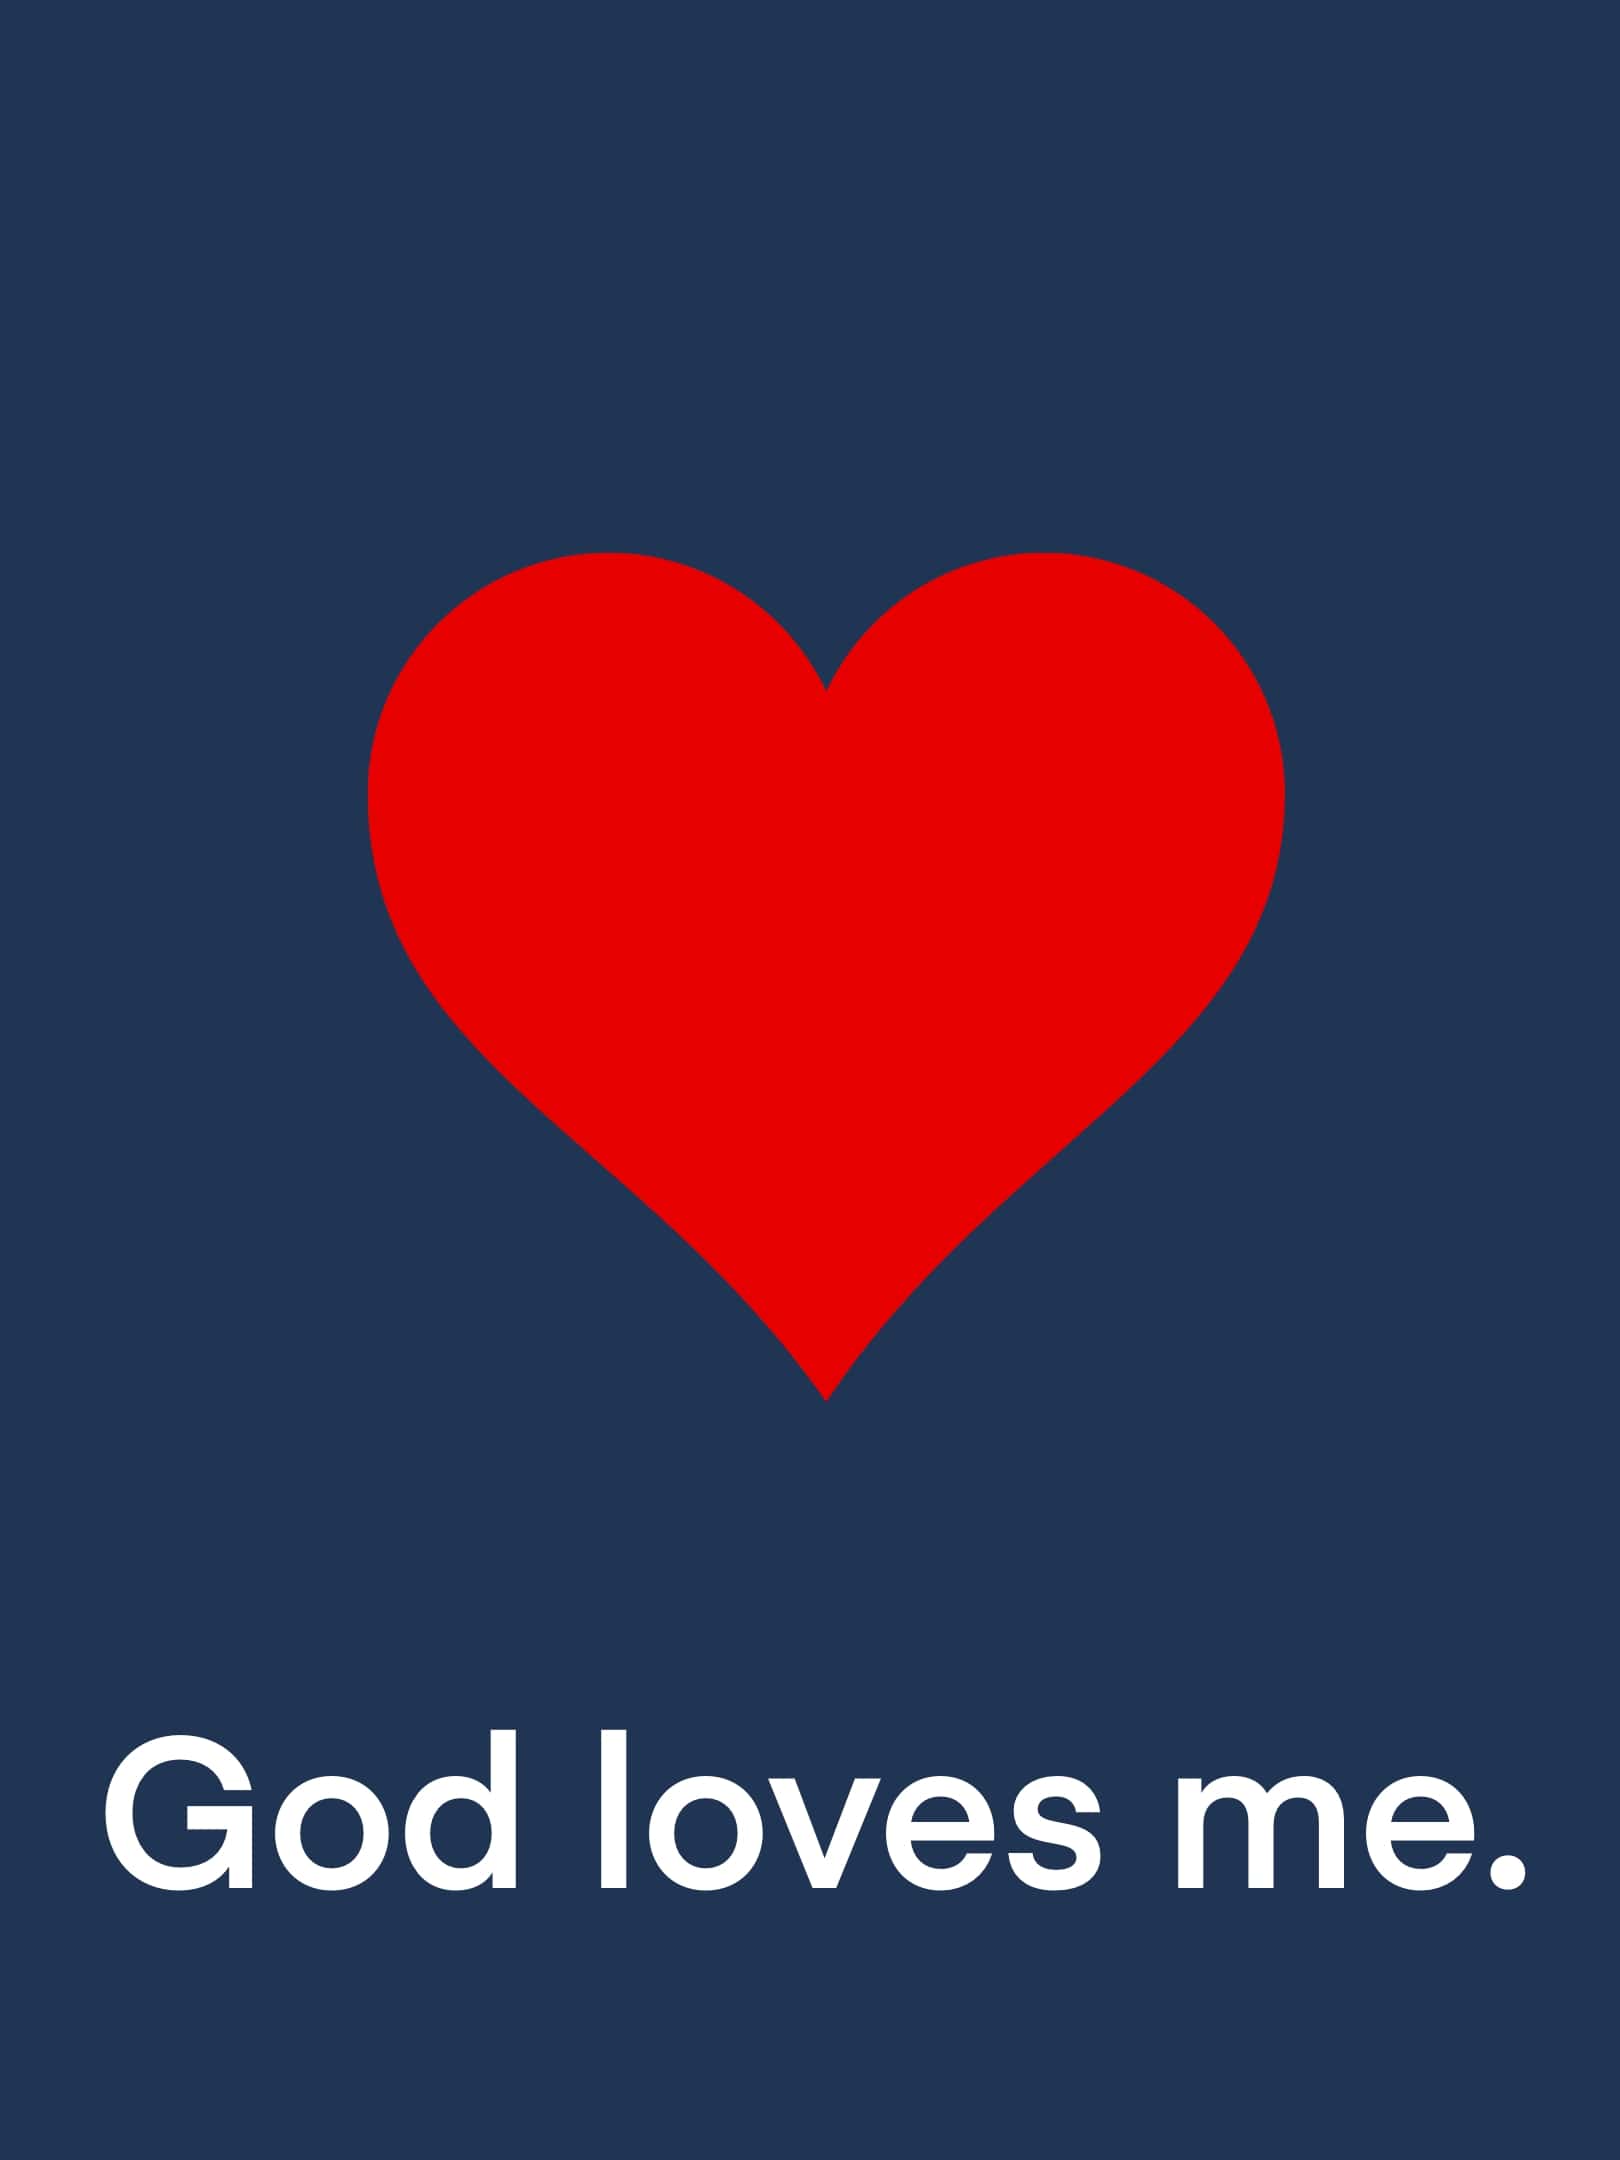 God loves you.